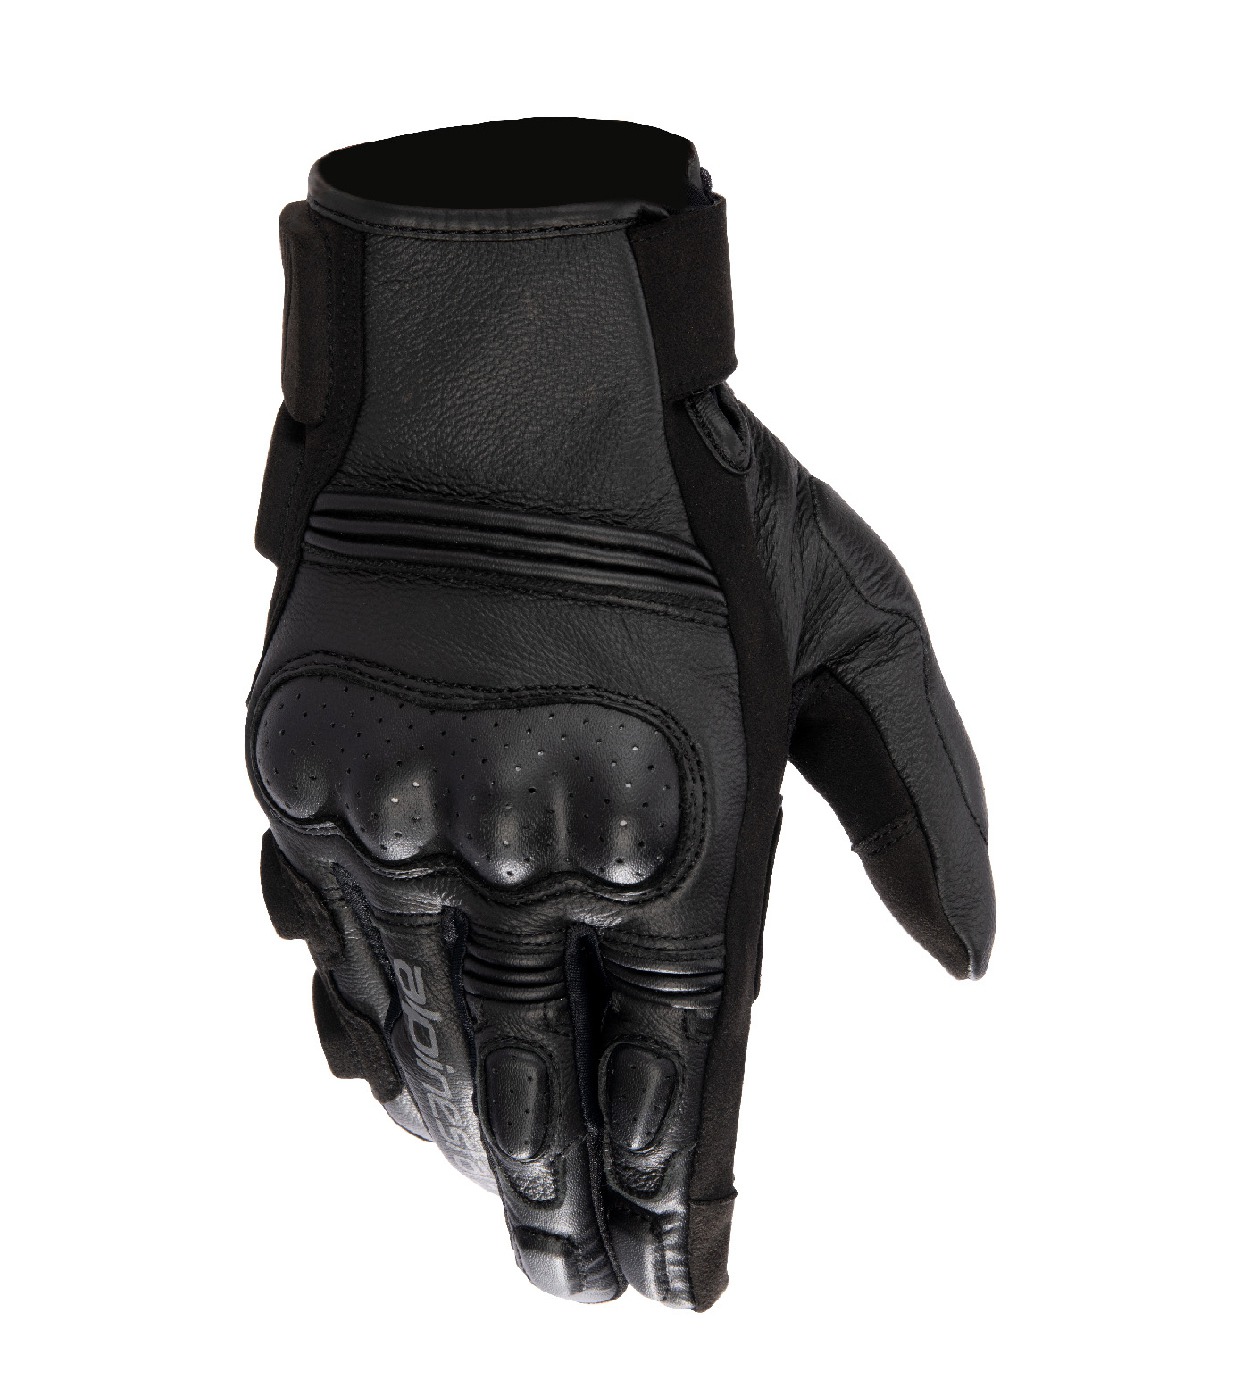 rukavice STELLA PHENOM, ALPINESTARS (černá/černá) 2024